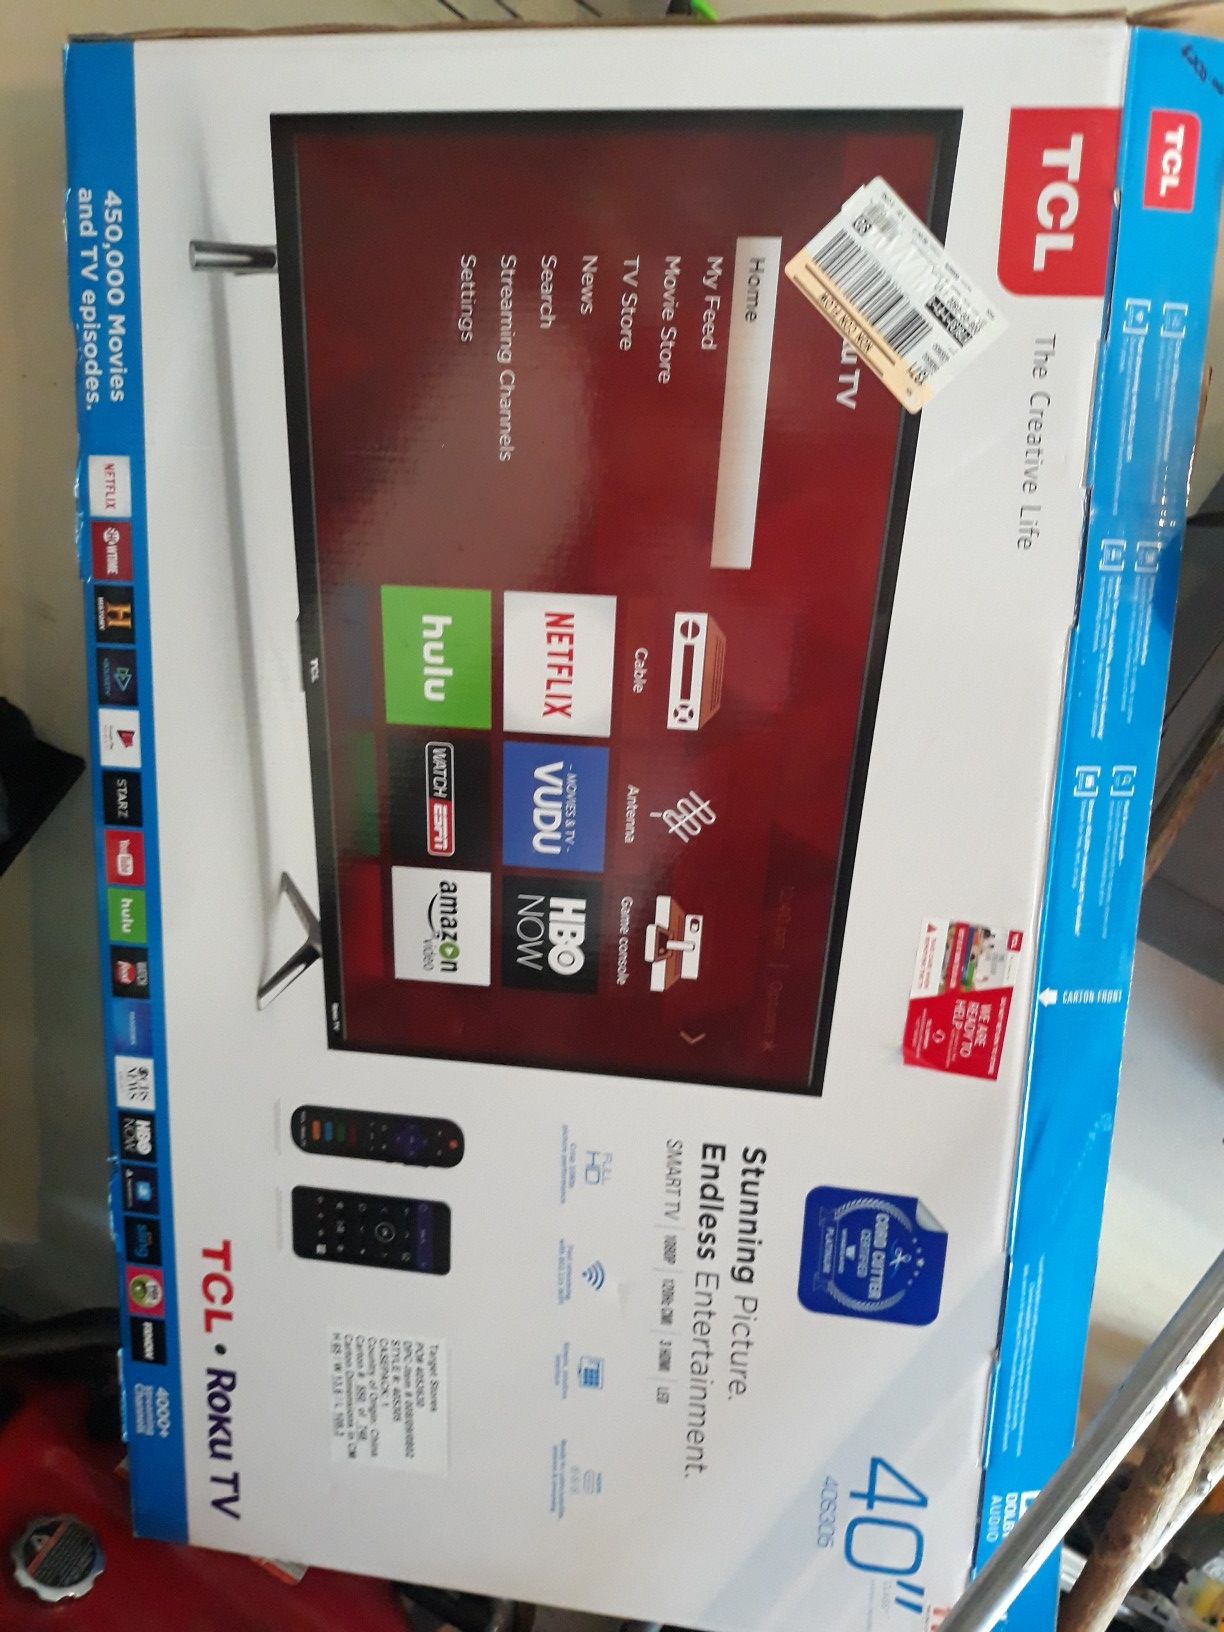 40 inch Smart TV